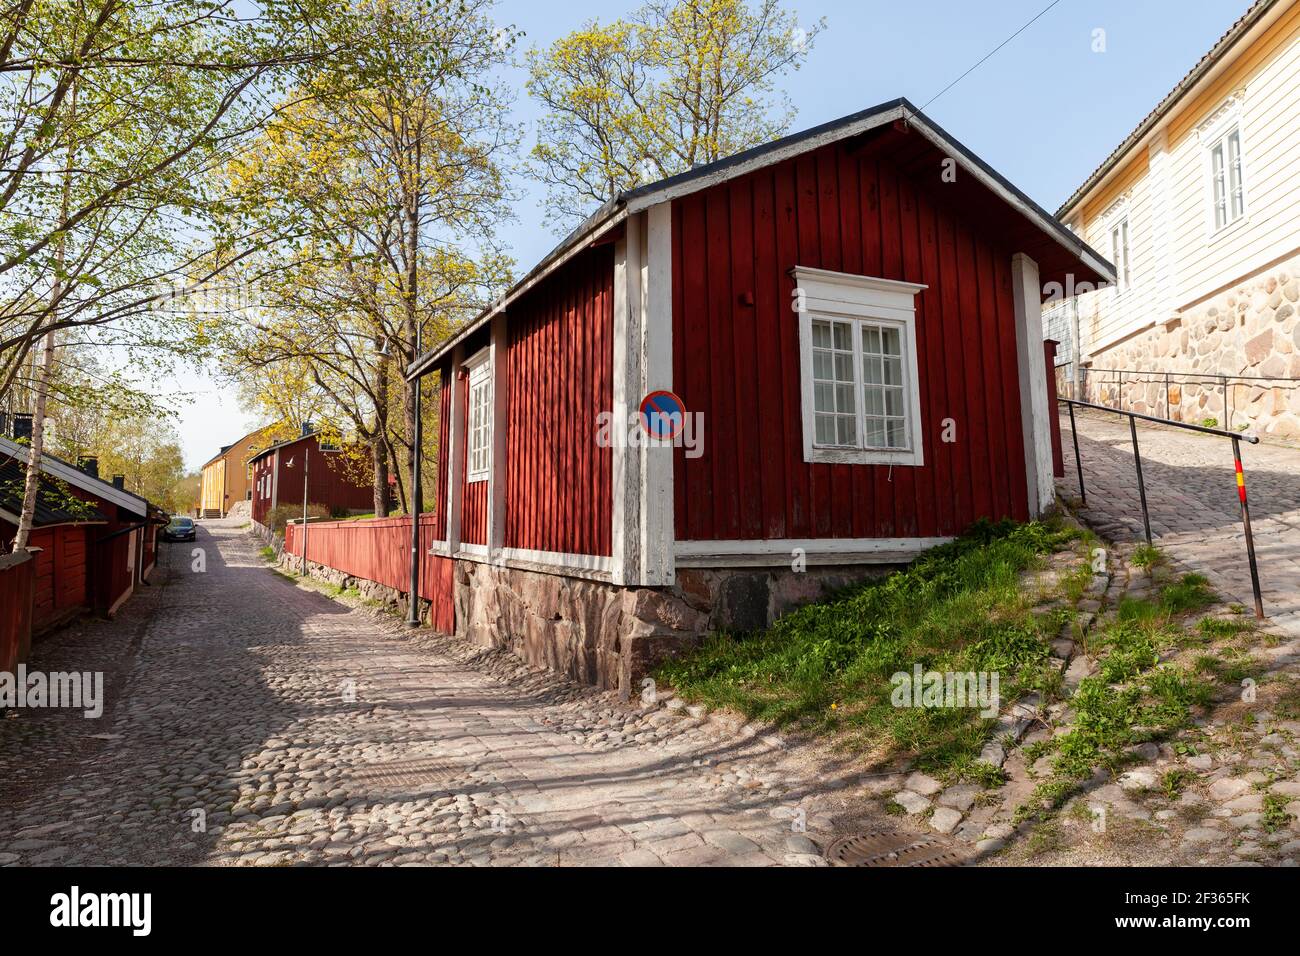 Vista sulla strada con case finlandesi in legno rosso. Città vecchia di Porvoo, Finlandia Foto Stock